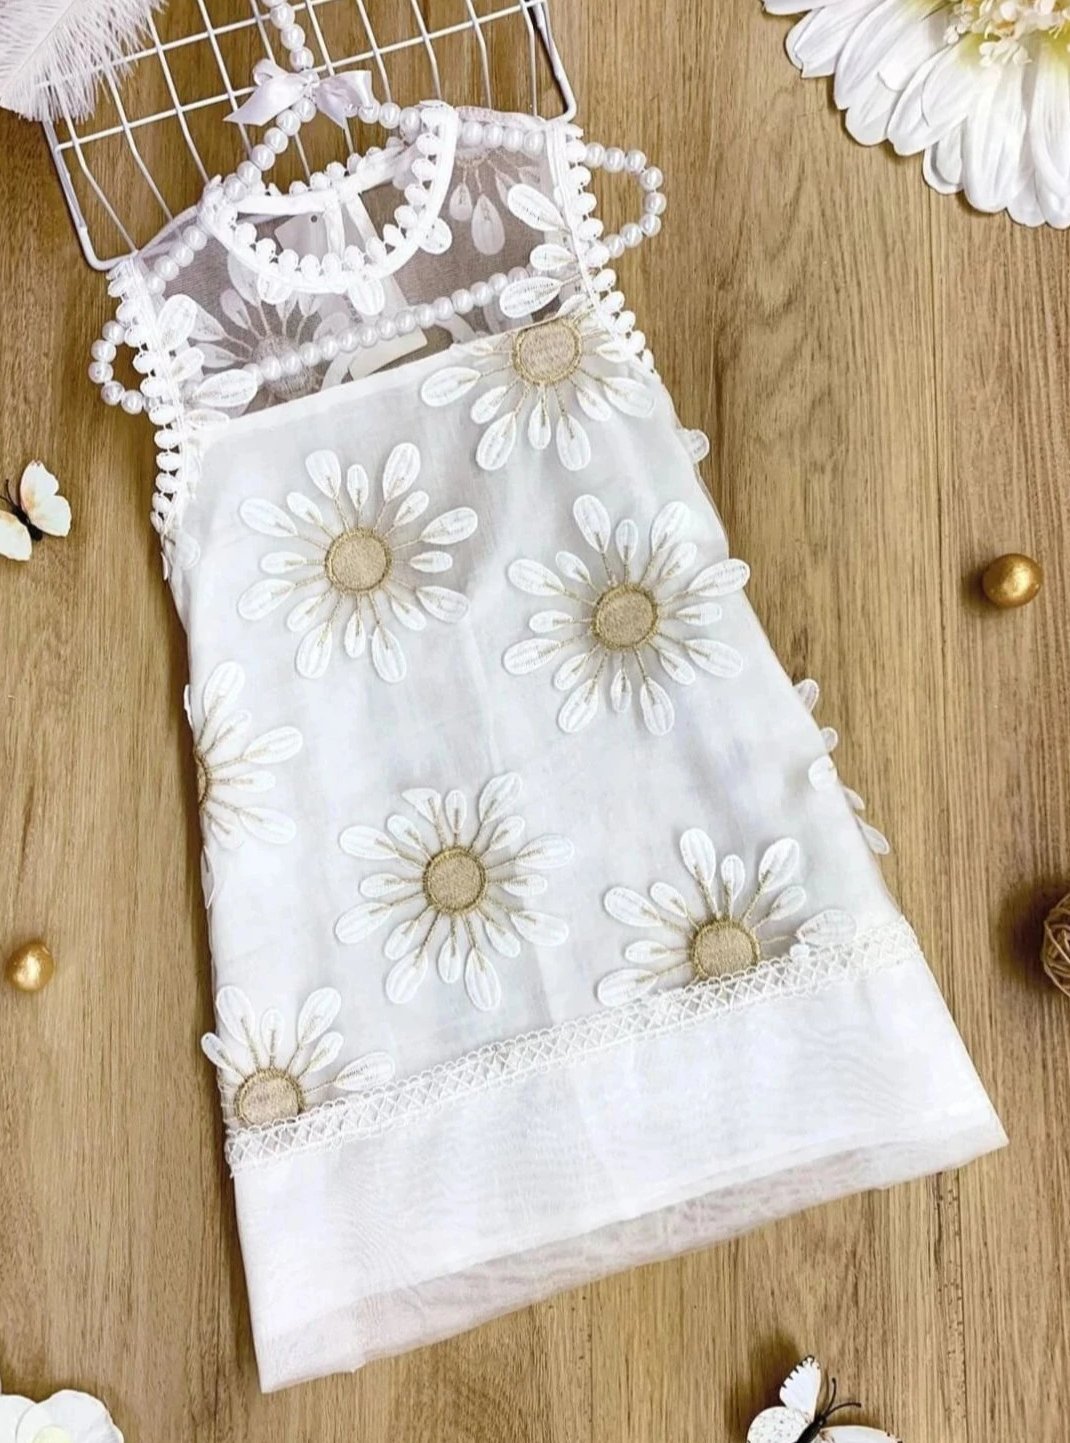 Girls Embroidery Sunflower Sleeveless Dress - White / 3T - Girls Spring Dressy Dress